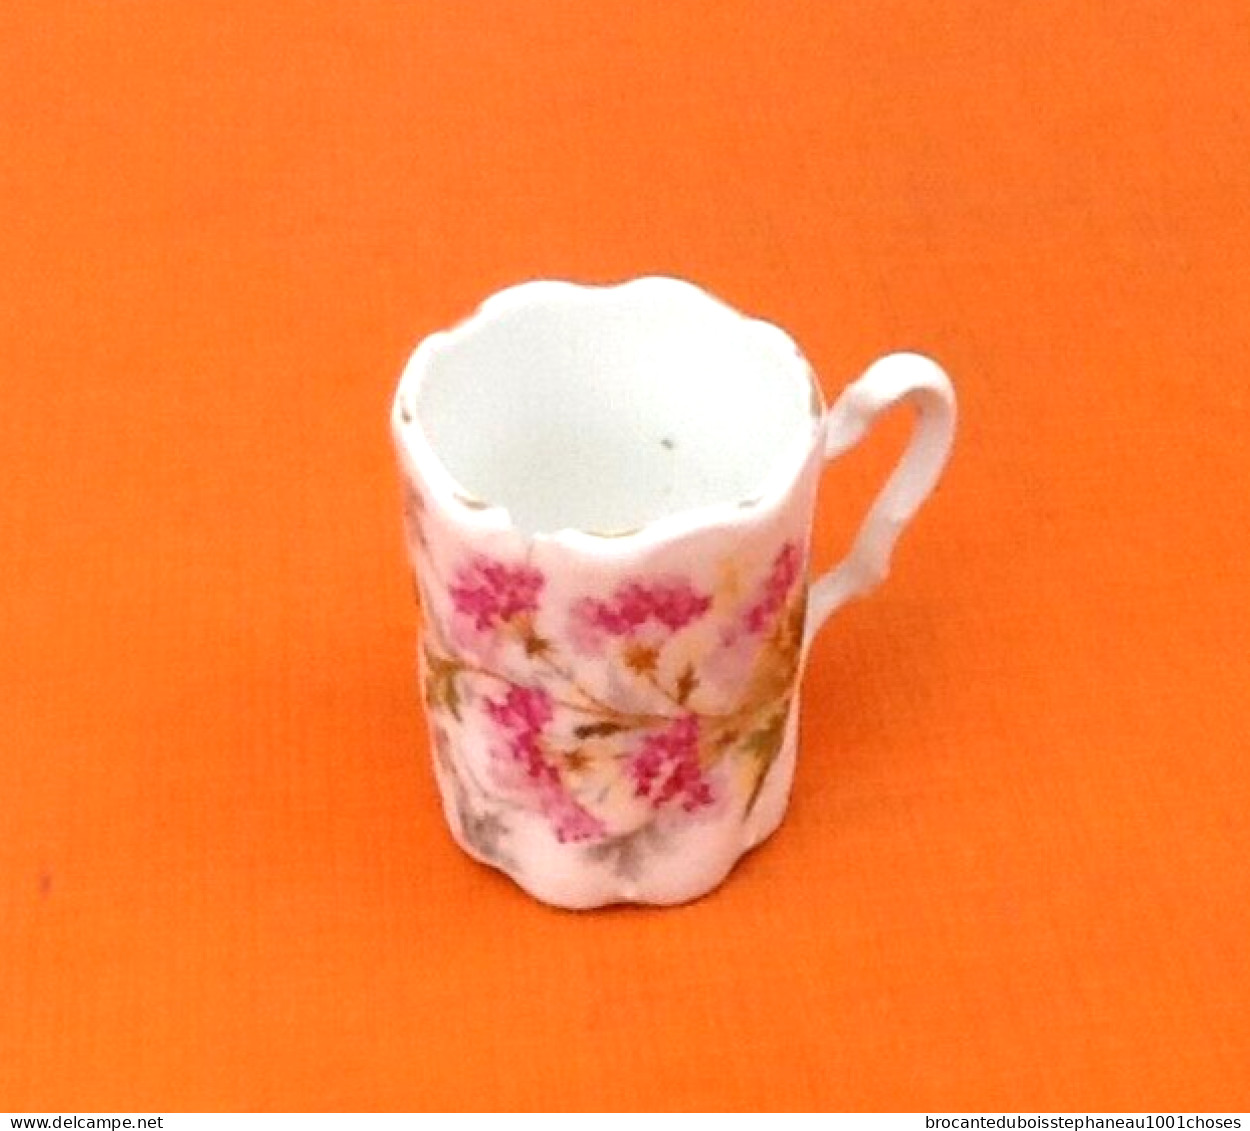 Ancien Cabaret / Service à liqueur   Plateau / 6 tasses  Porcelaine fine blanche et or à décor floral